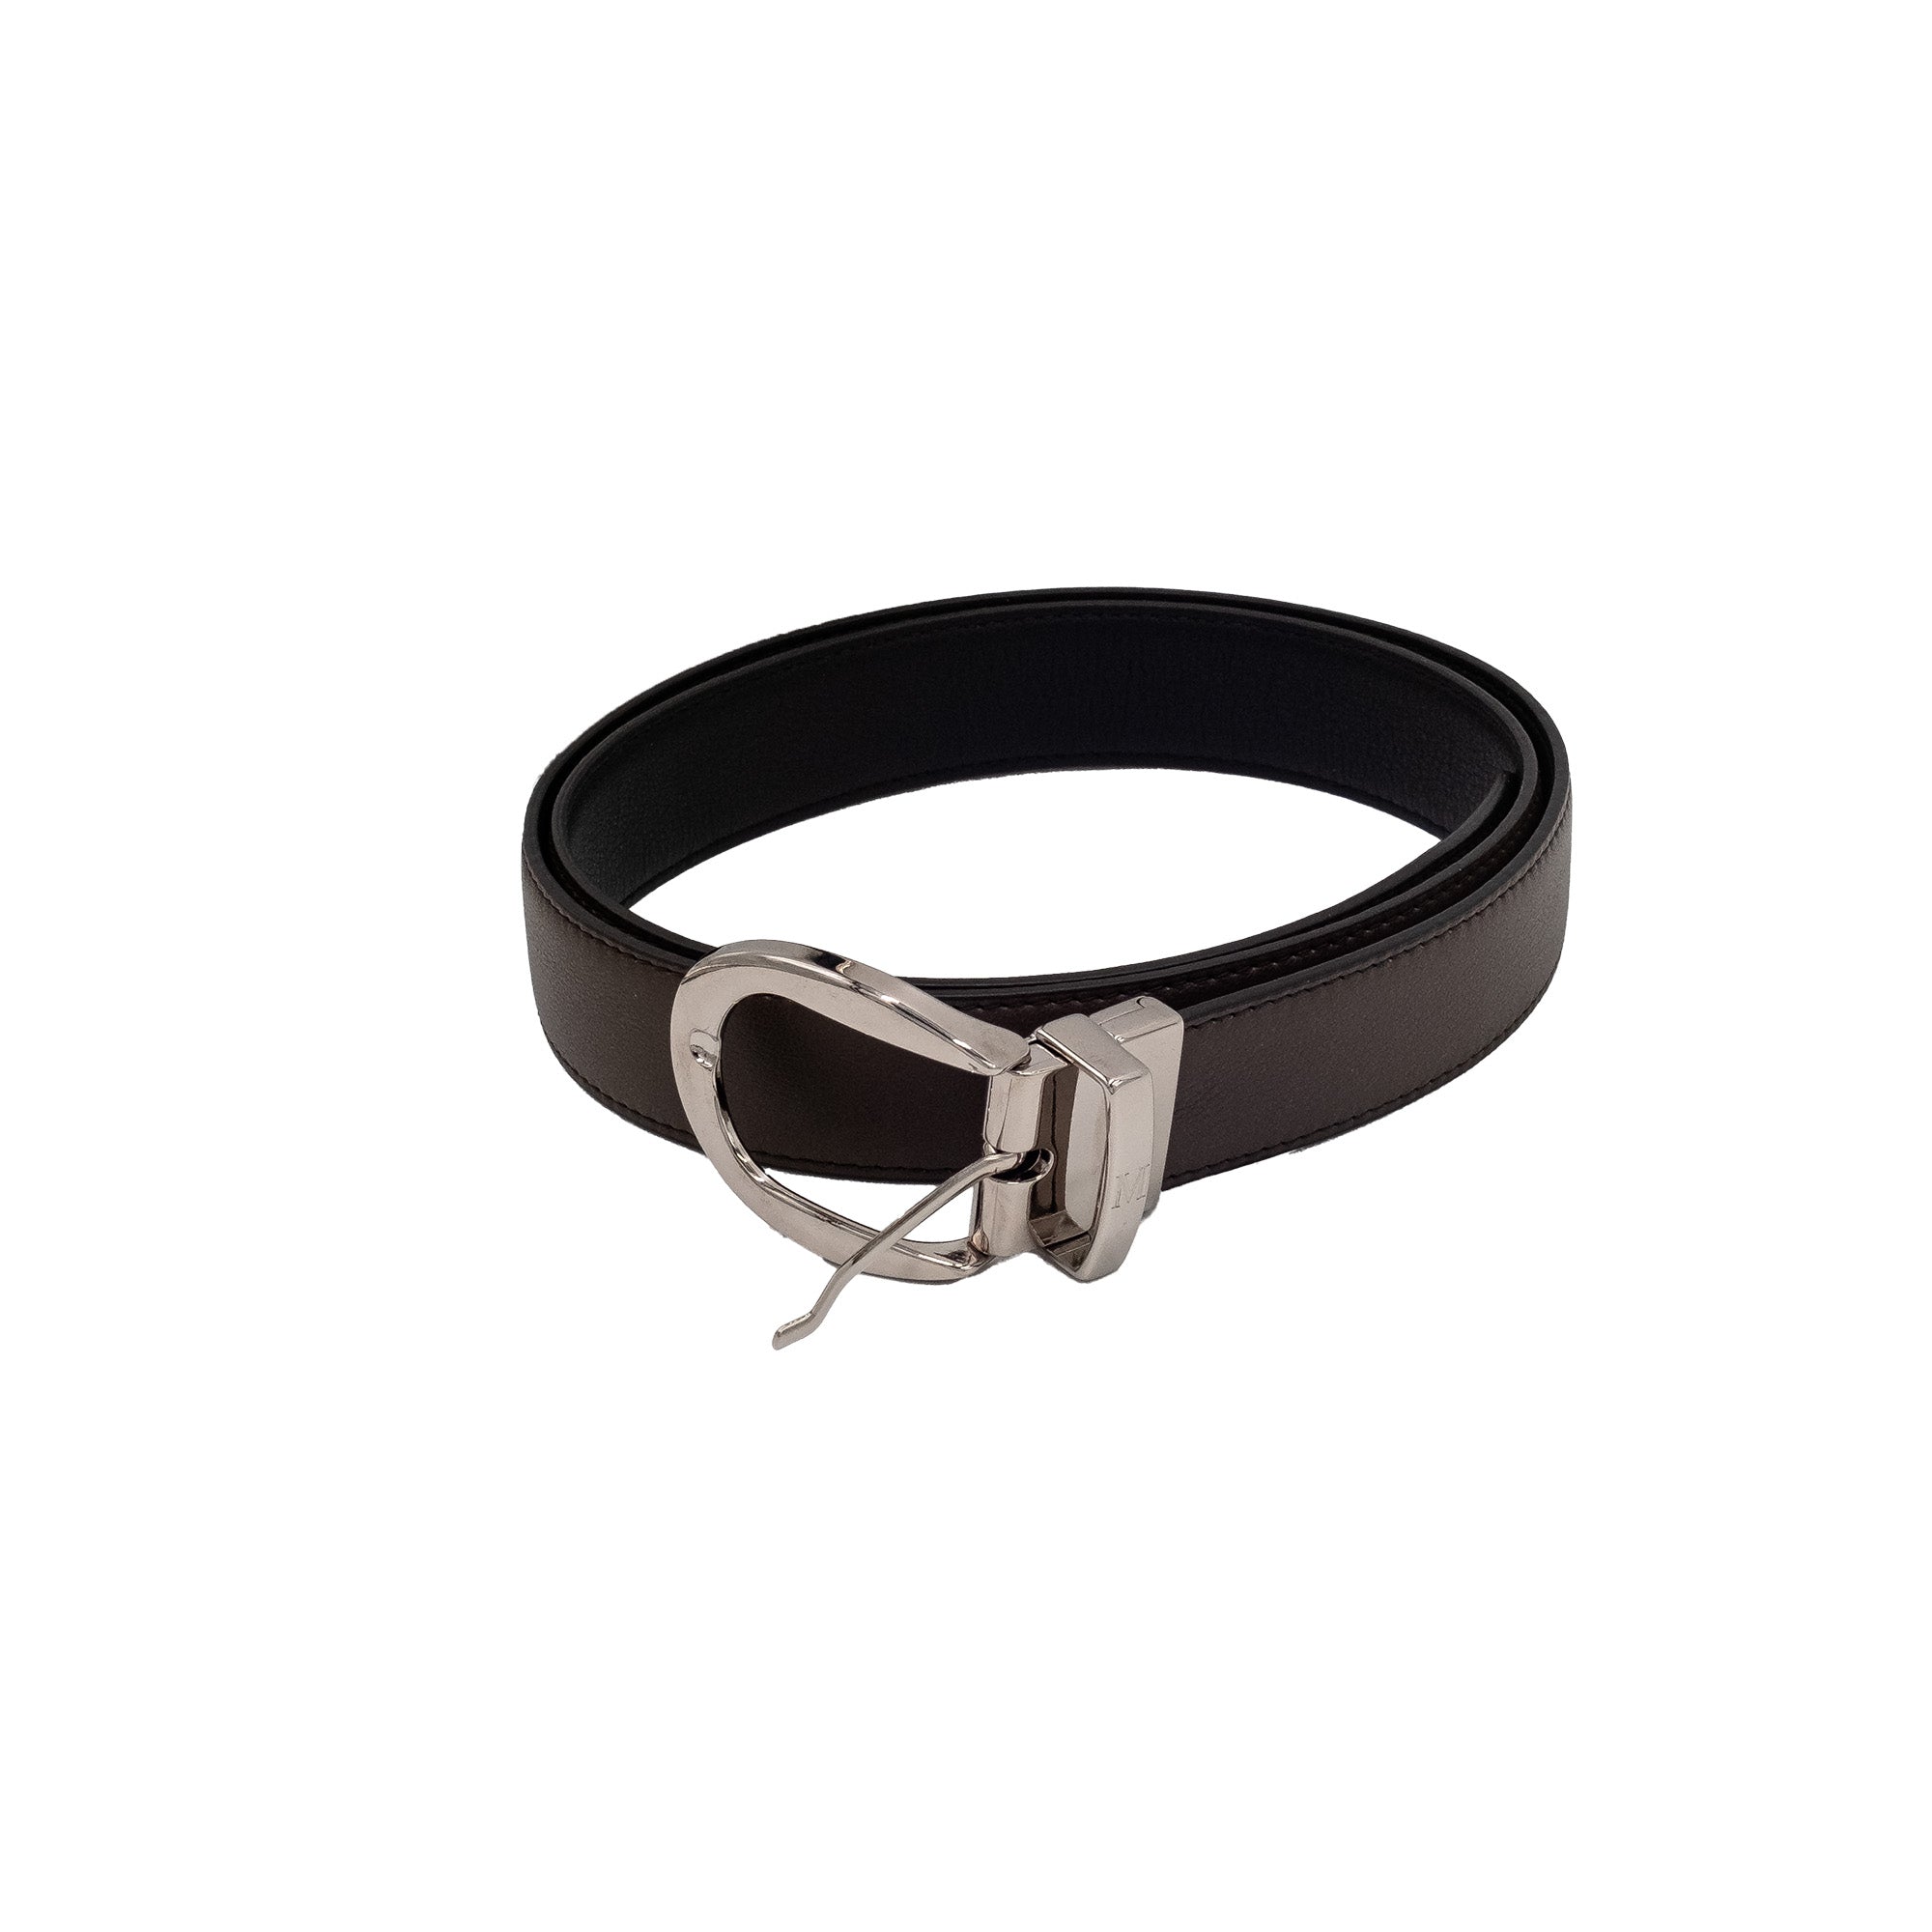 Reversible belt - black calfskin, chocolate calfskin